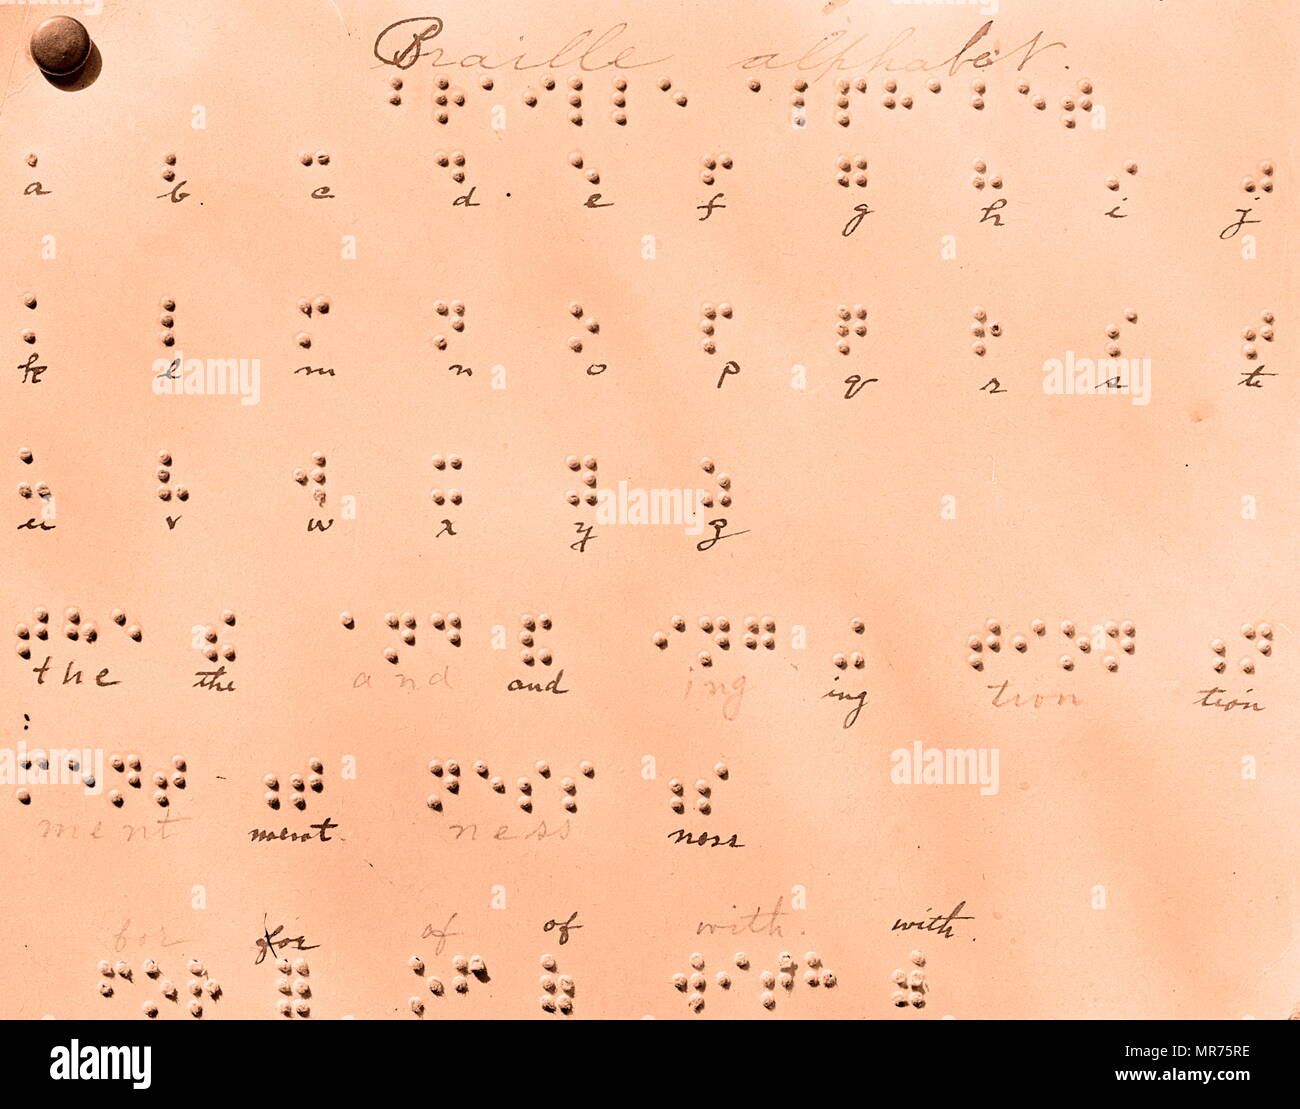 Alfabeto Braille Tattile Di Un Sistema Di Scrittura Utilizzato Da Persone Non Vedenti Esso E Tradizionalmente